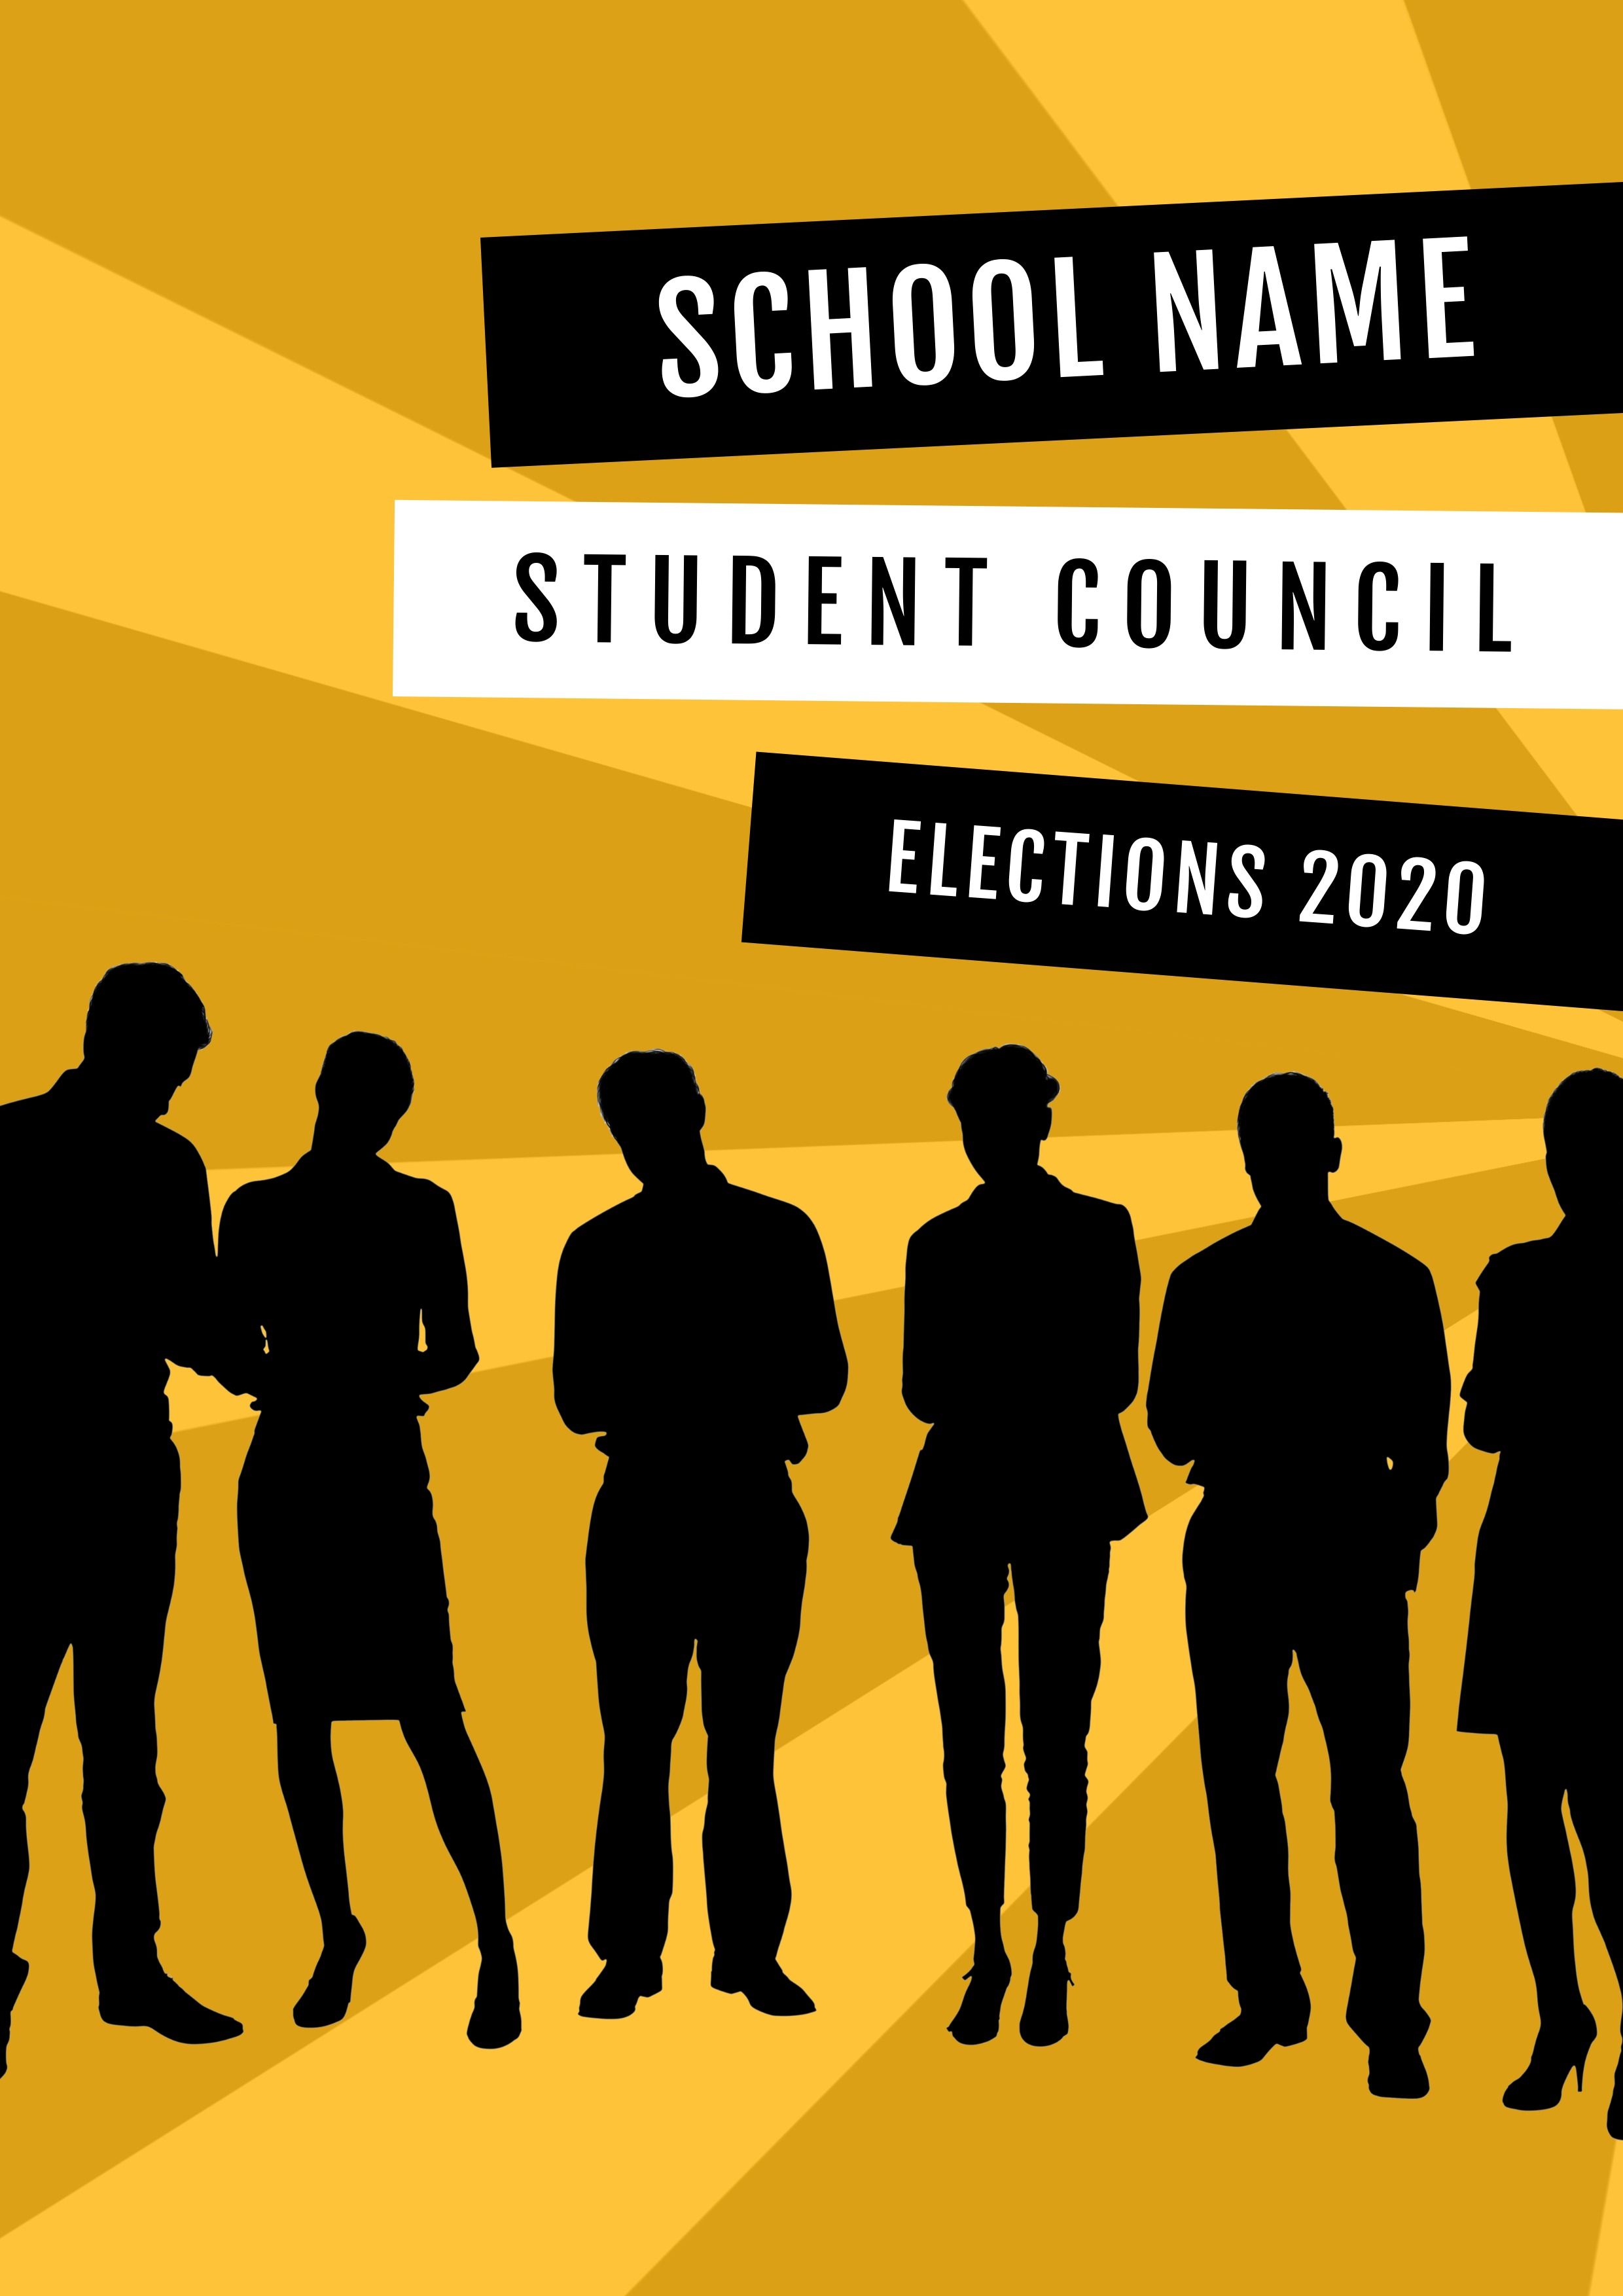 Cartel electoral del consejo estudiantil negro y amarillo.